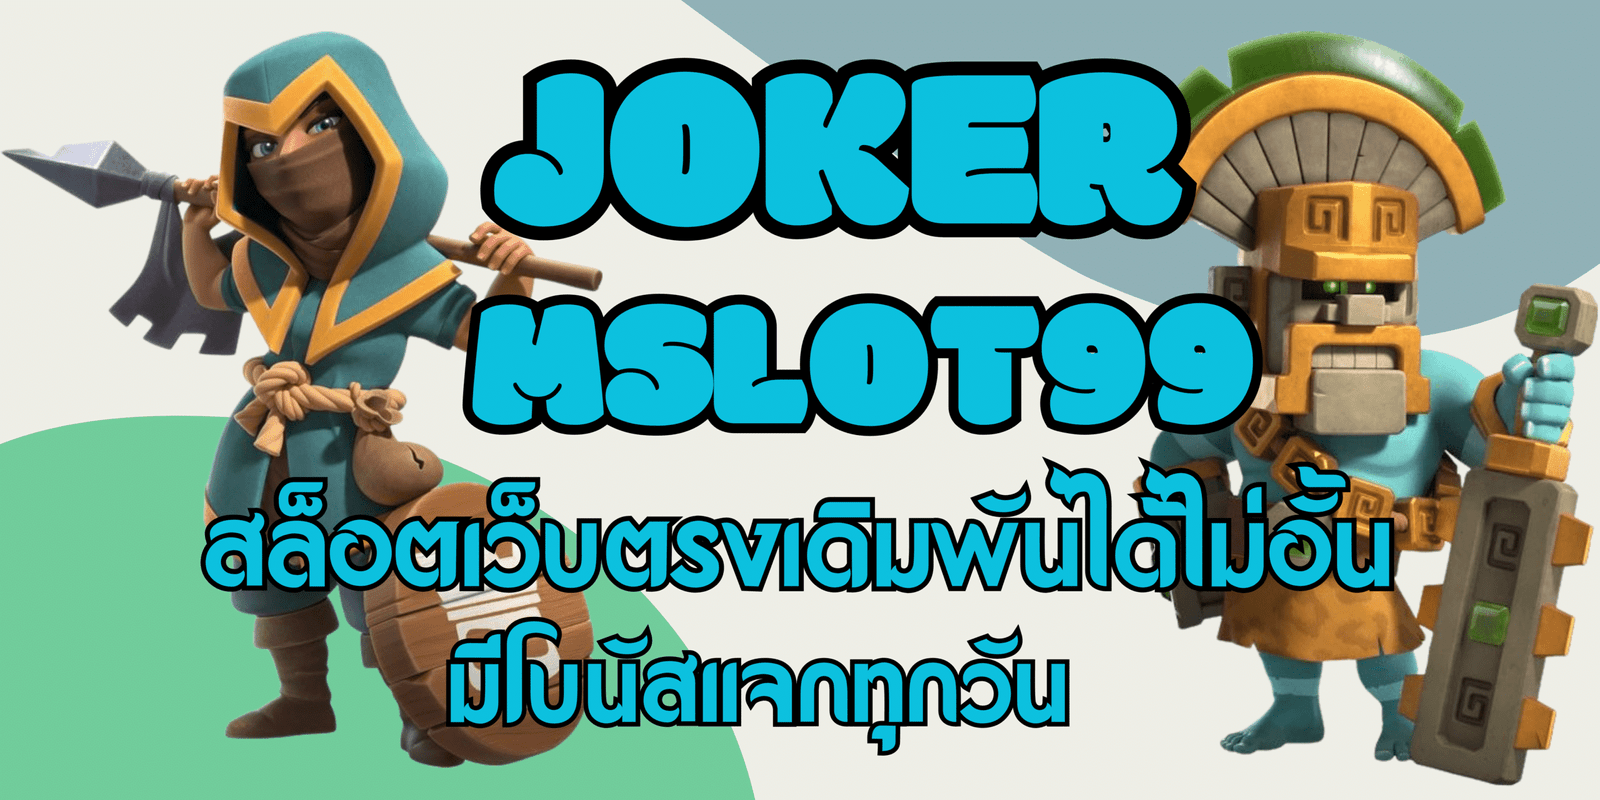 joker-mslot99-มีโบนัสแจก